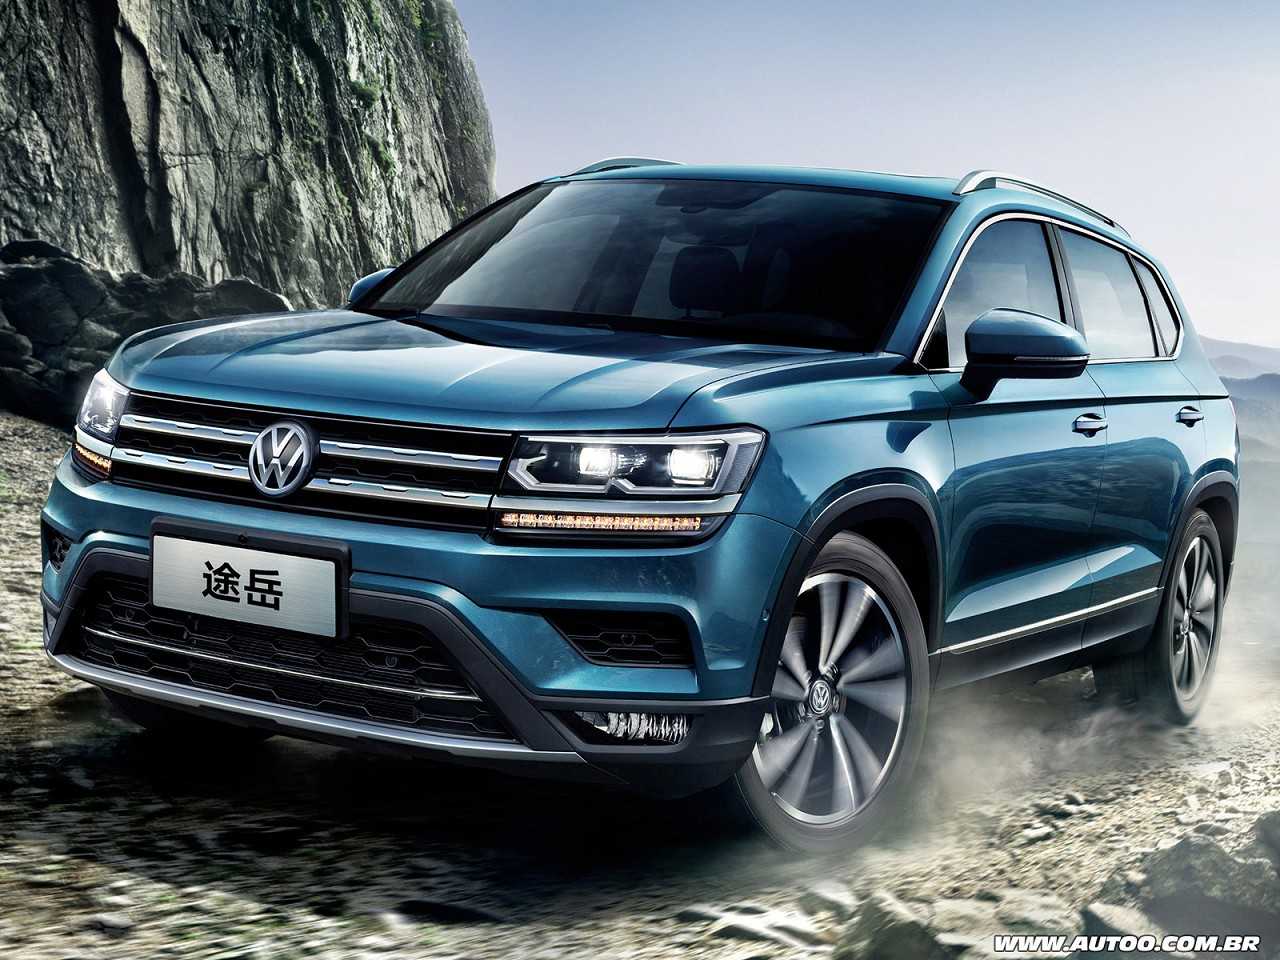 Acima o VW Tharu hoje comercializado na China